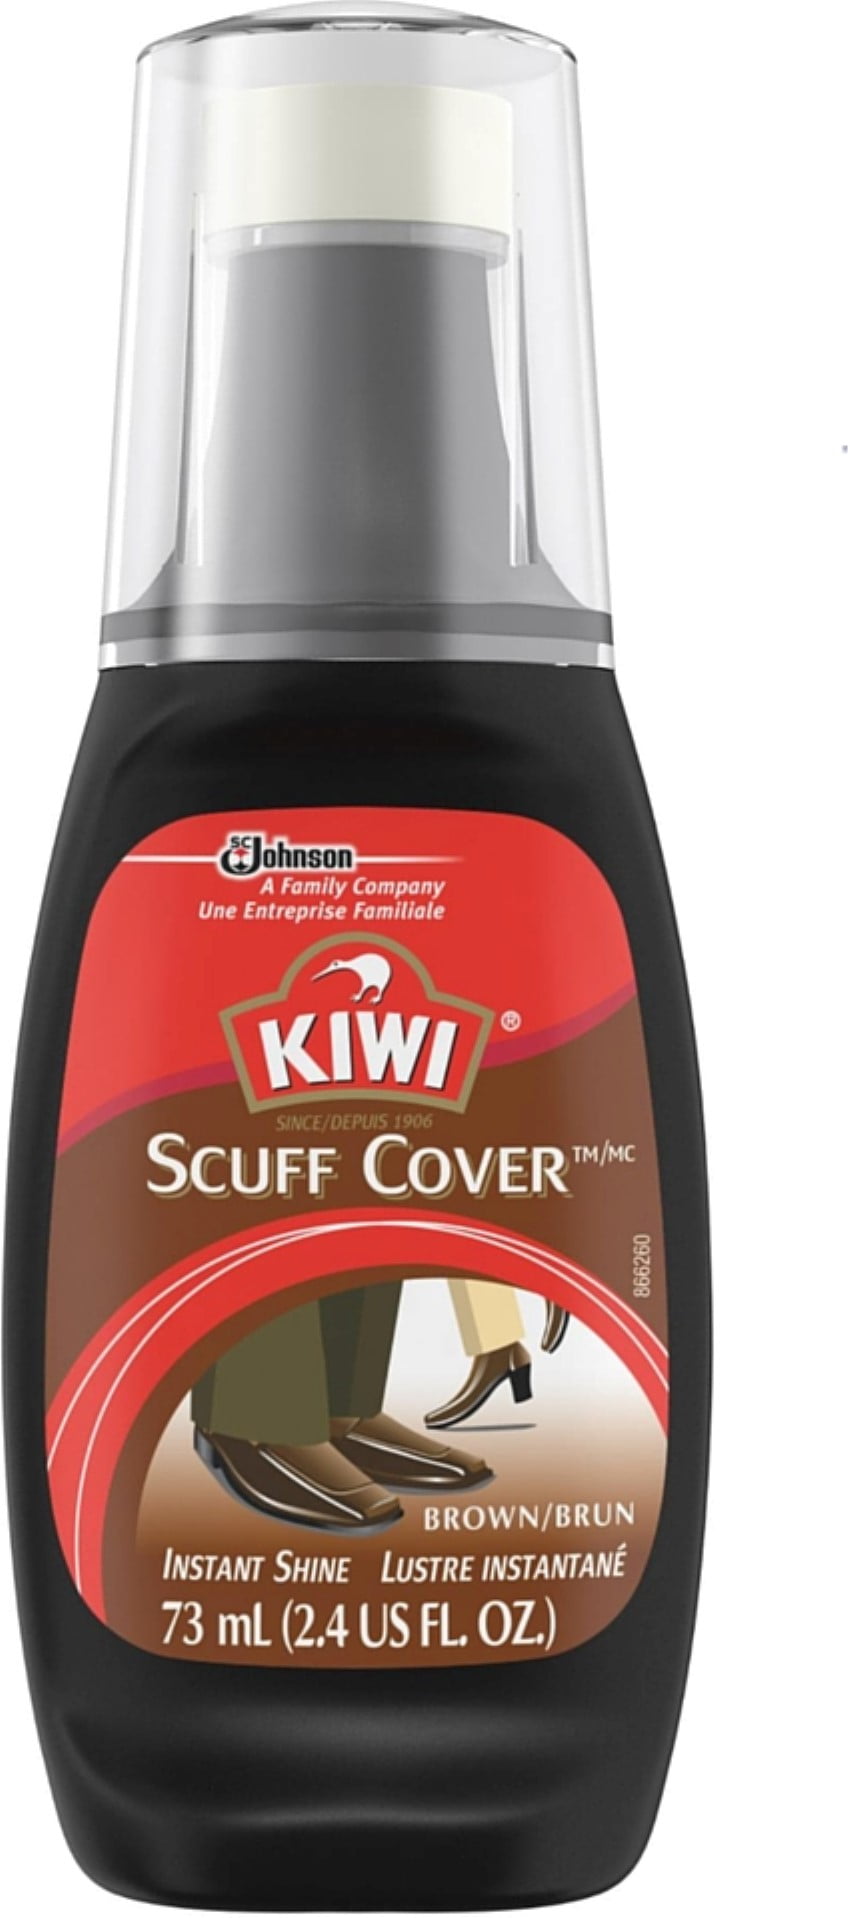 KIWI Scuff Cover White Bottle, 2.4 Fl Oz (Pack of 1)